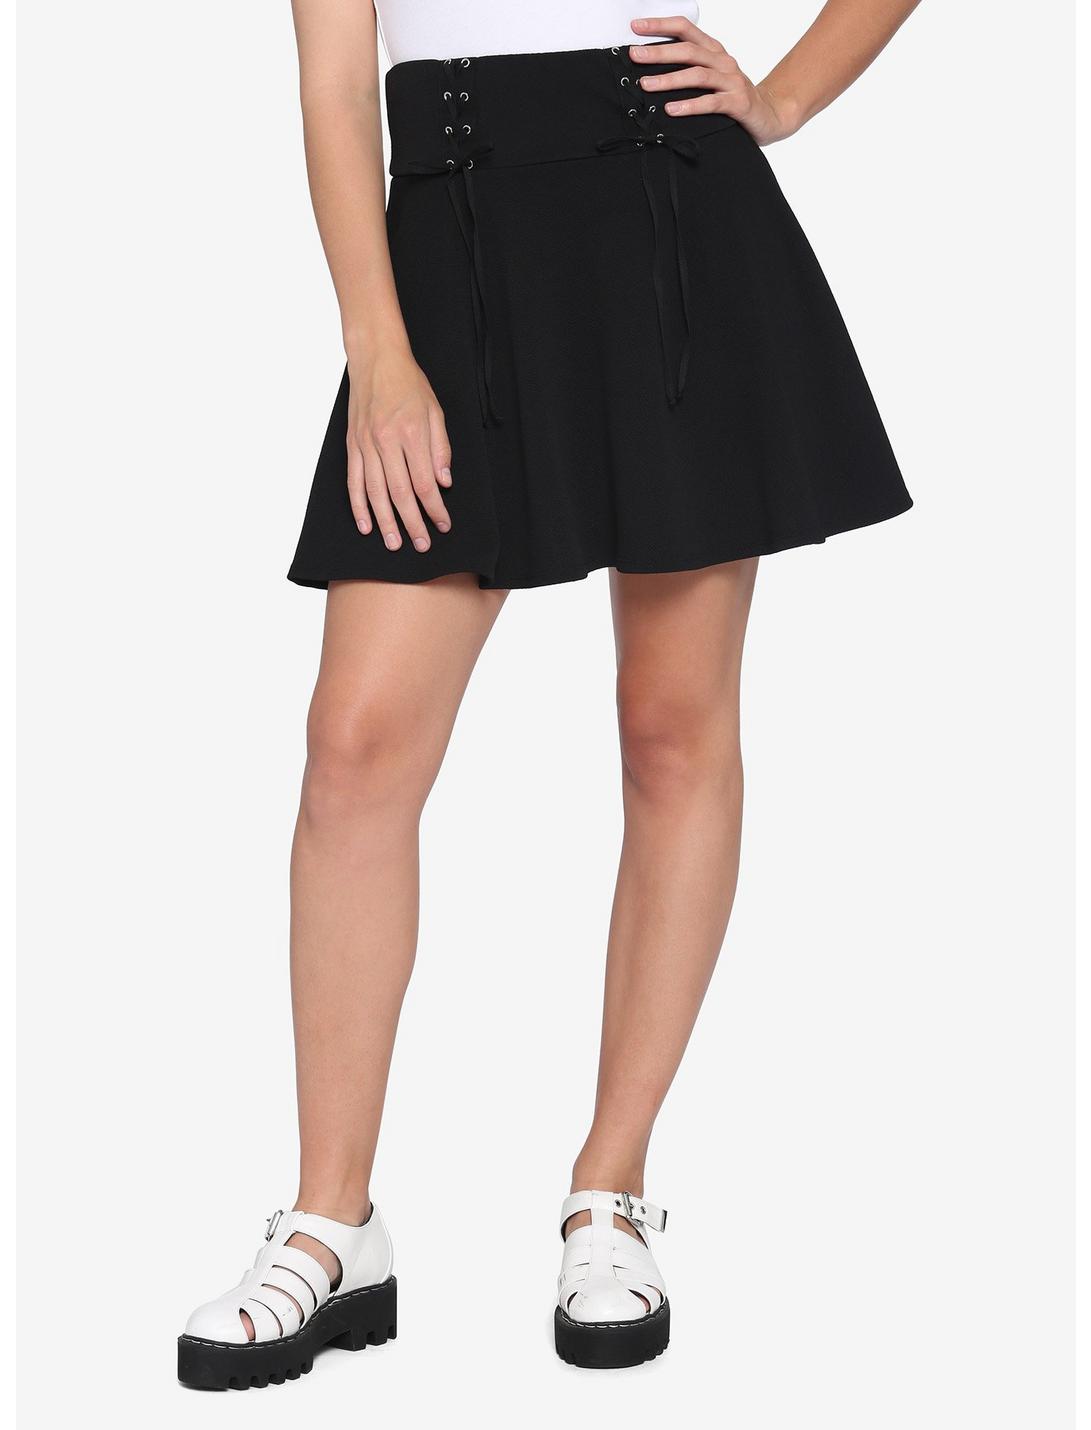 Multi Lace-Up Black Yoke Skirt, BLACK, hi-res